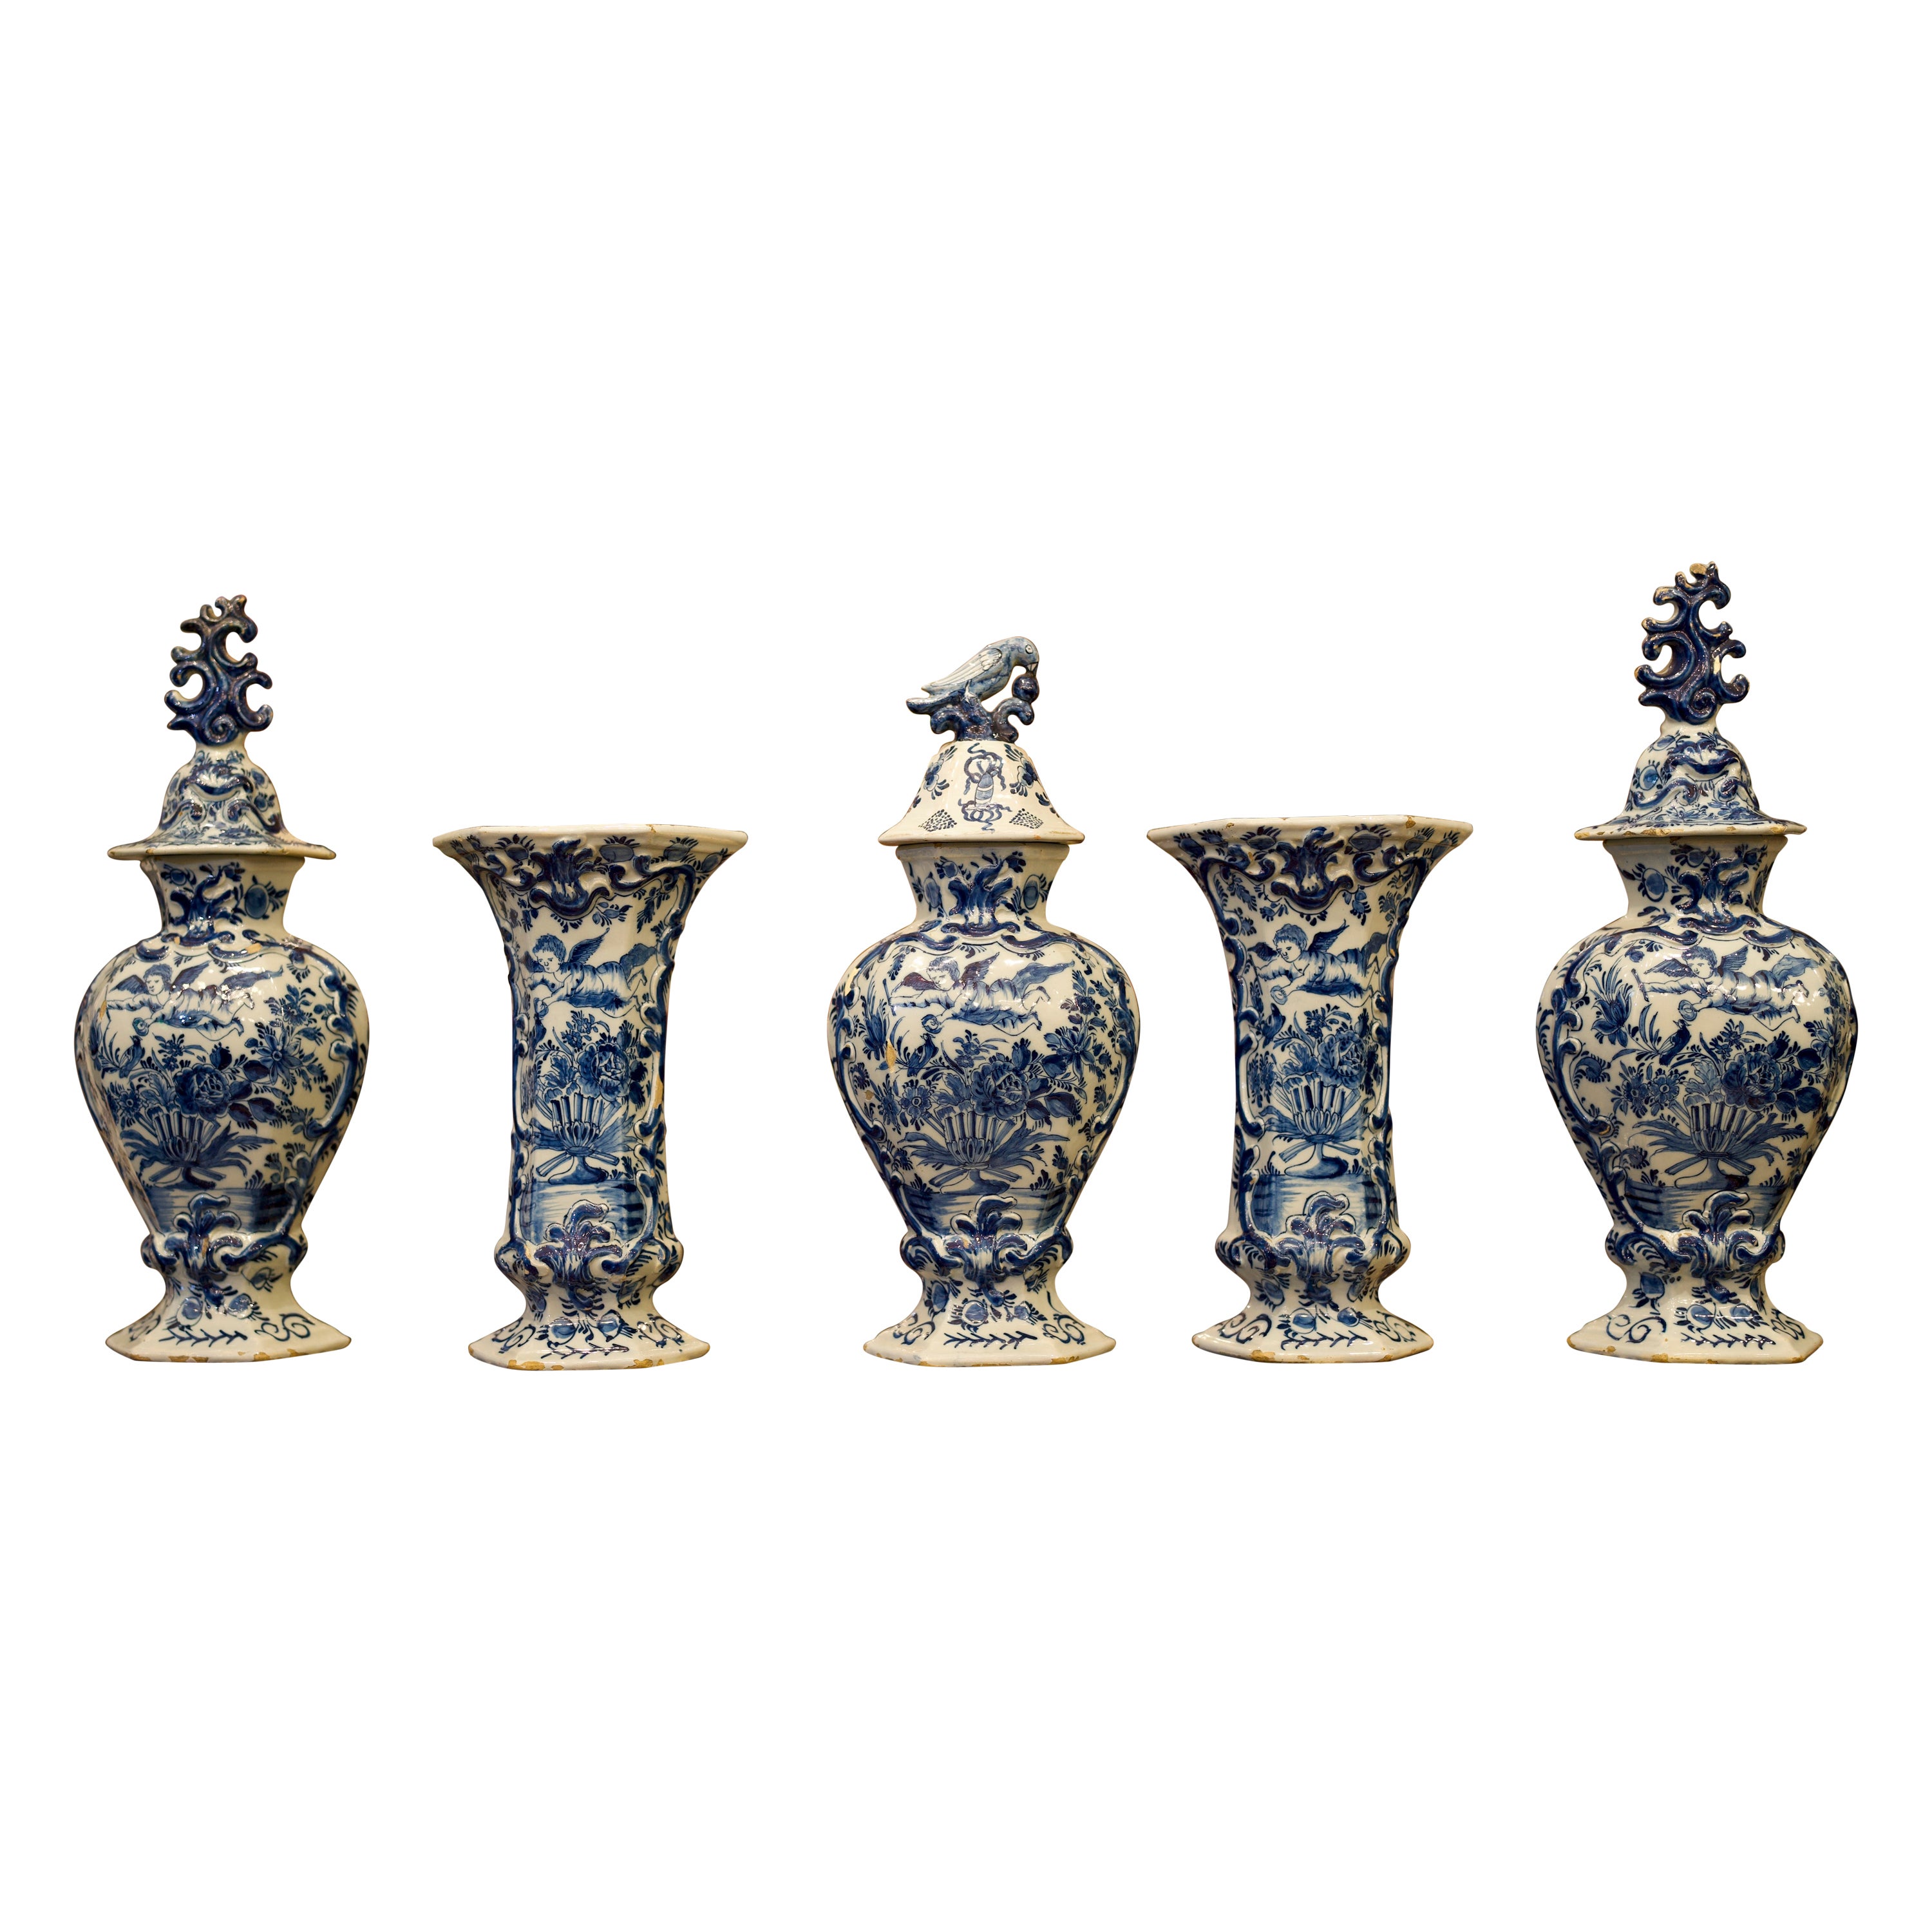 Garniture de vases de Delft bleus et blancs du milieu du XVIIIe siècle